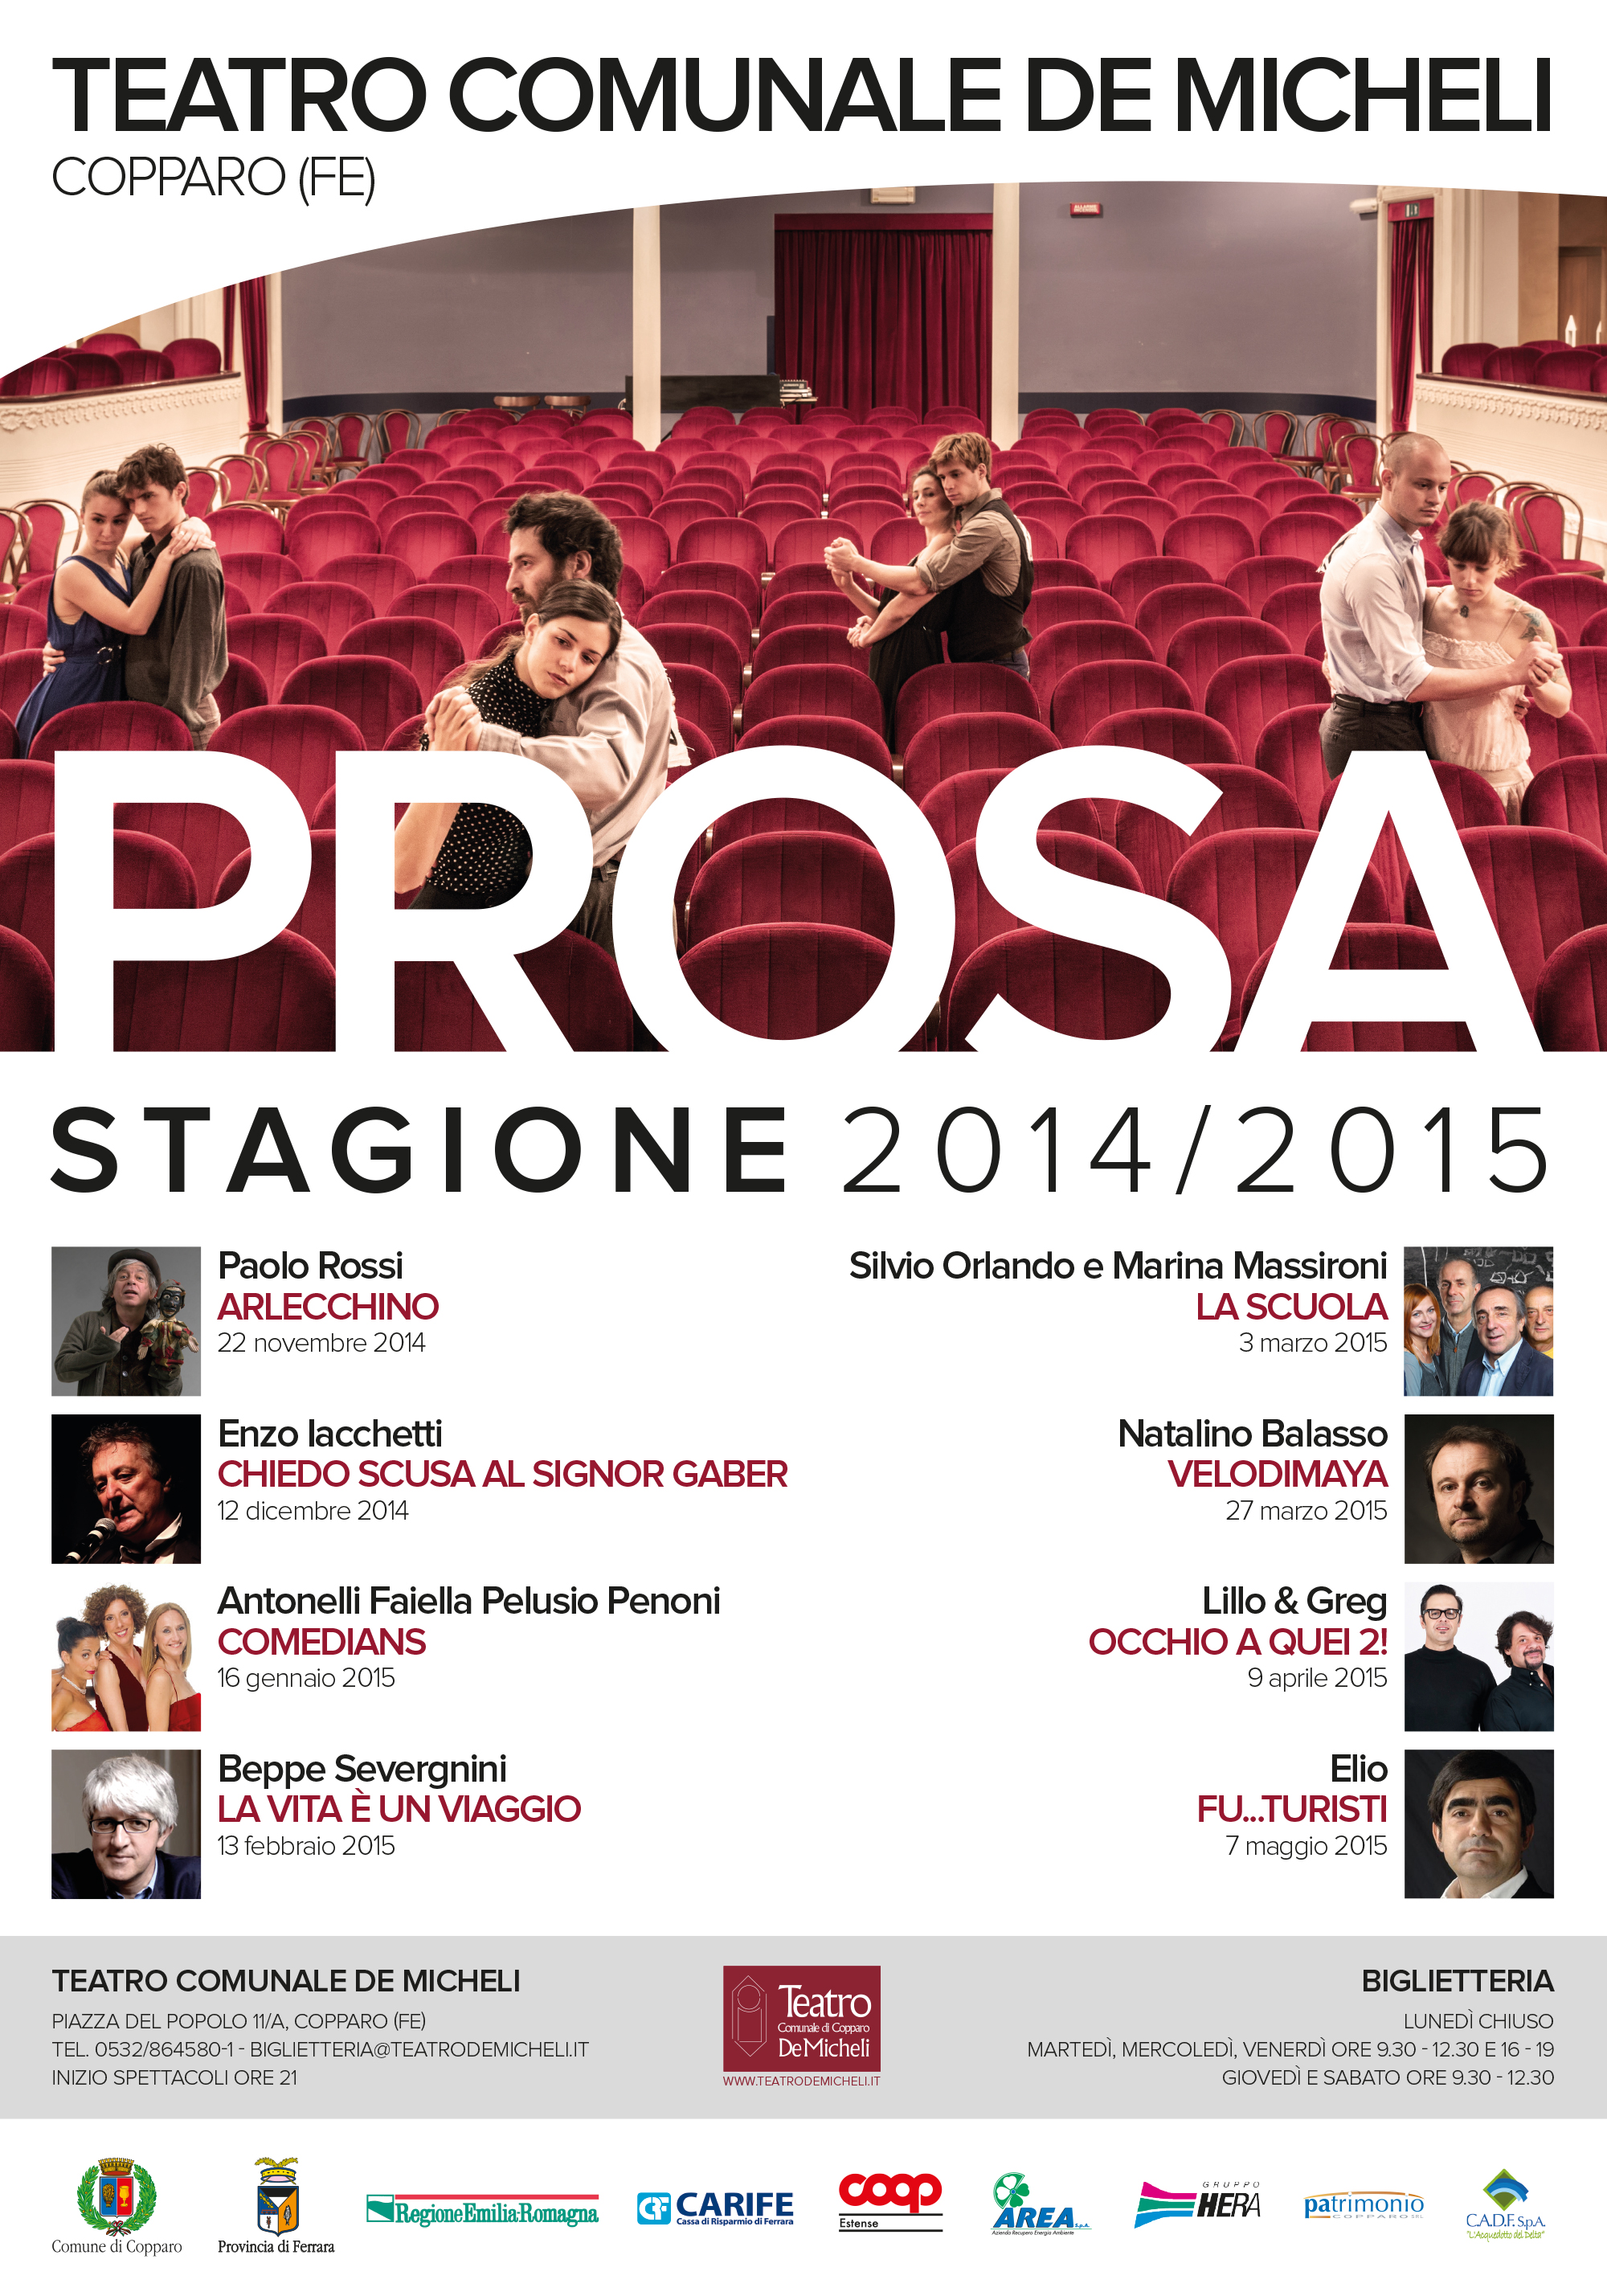 Featured image for “Teatro De Micheli 2014/2015”